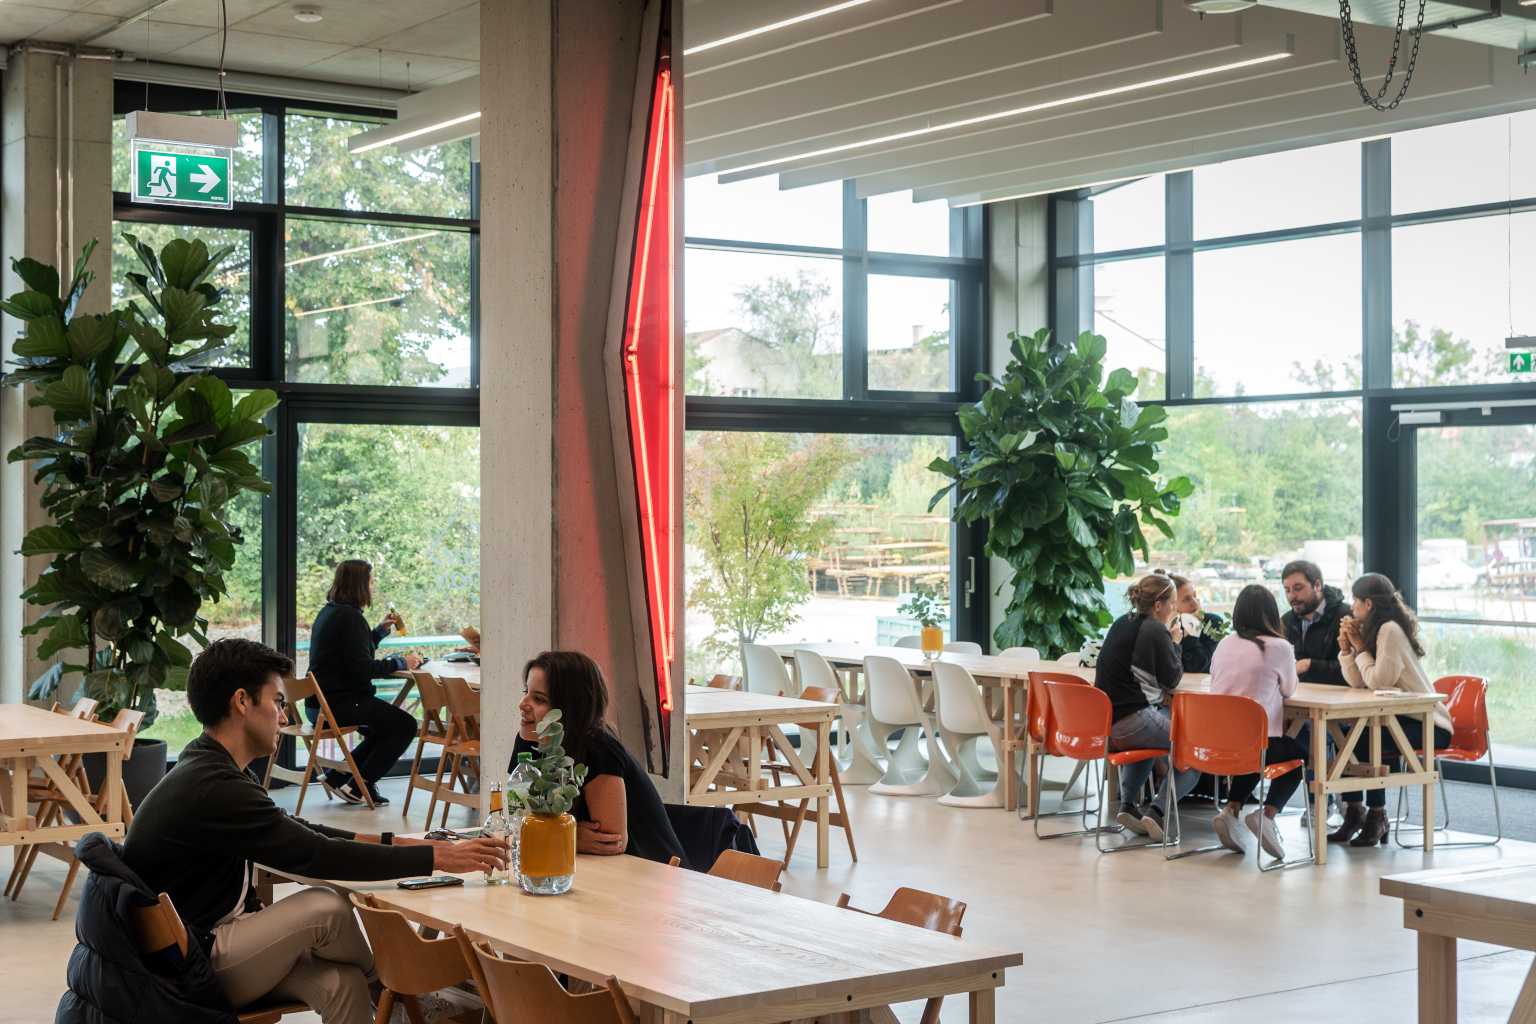 Munich Urban Colab - Blick in die Cafeteria mit mehreren Gästen, die an den Tischen sitzen